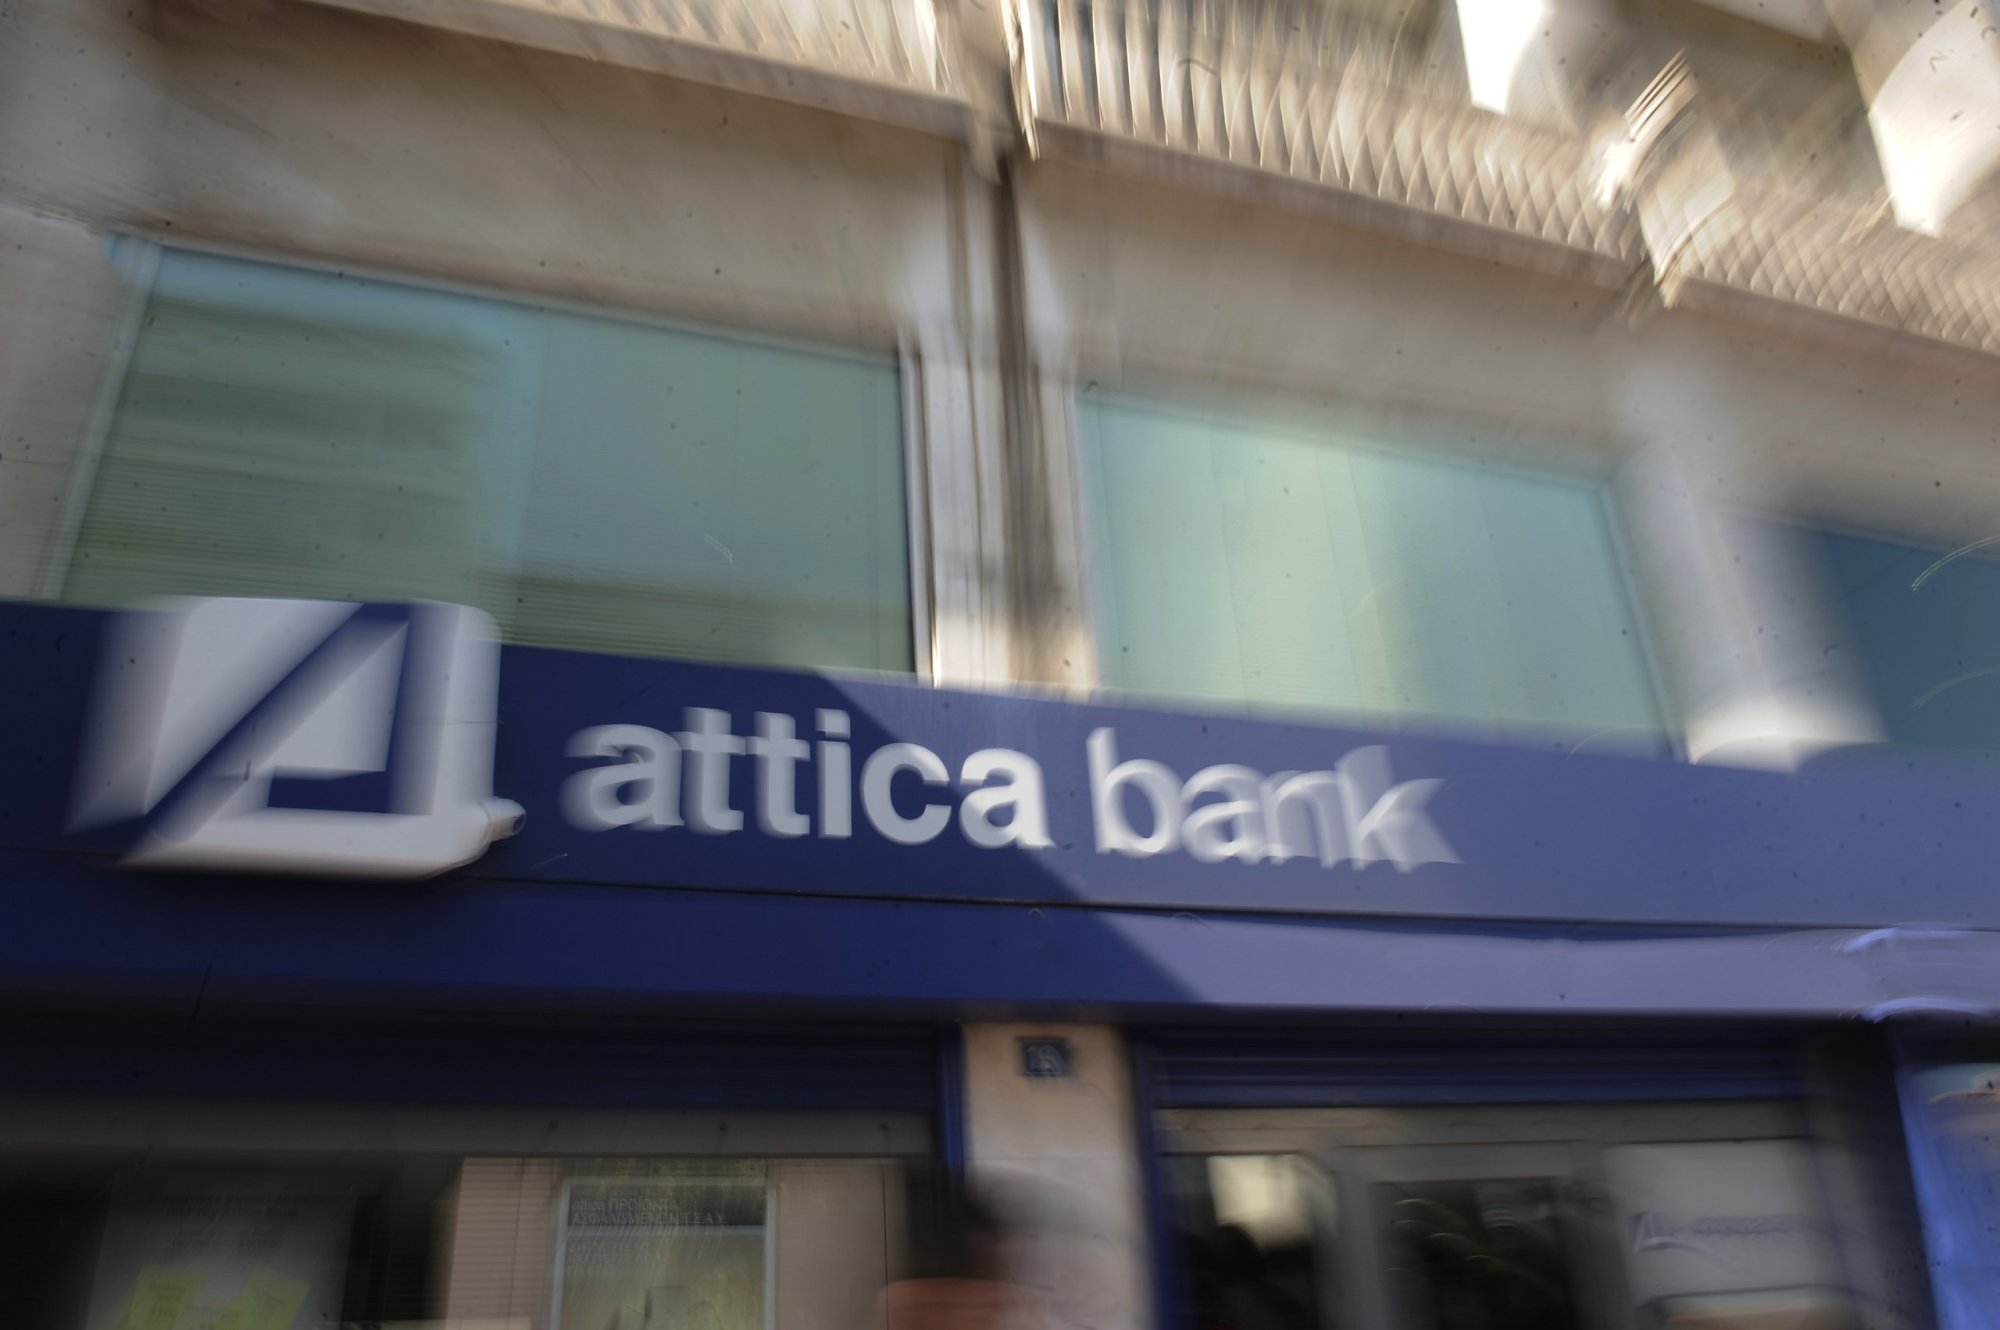 Ζημία του Δημοσίου με «αδιαφανή συμφωνία» για Attica Bank καταγγέλλει ο ΣΥΡΙΖΑ – Υπεκφεύγει ουσιαστικής απάντησης το ΥΠΟΙΚ